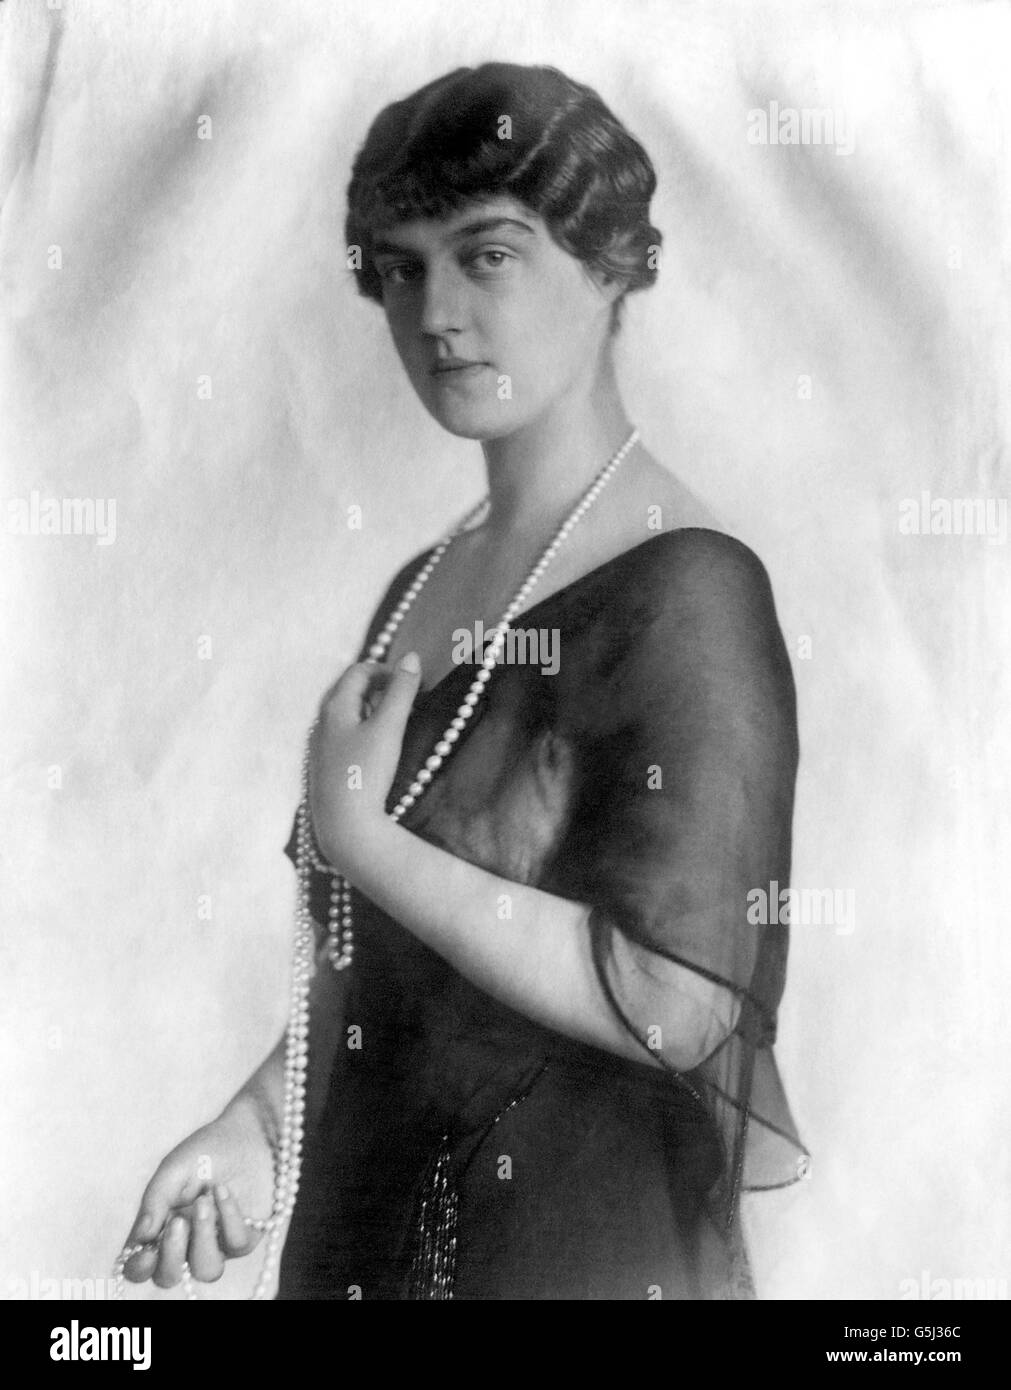 Erster Weltkrieg - Russische Führer - 1914. Großherzogin Marie Pavlovna von Russland. Stockfoto